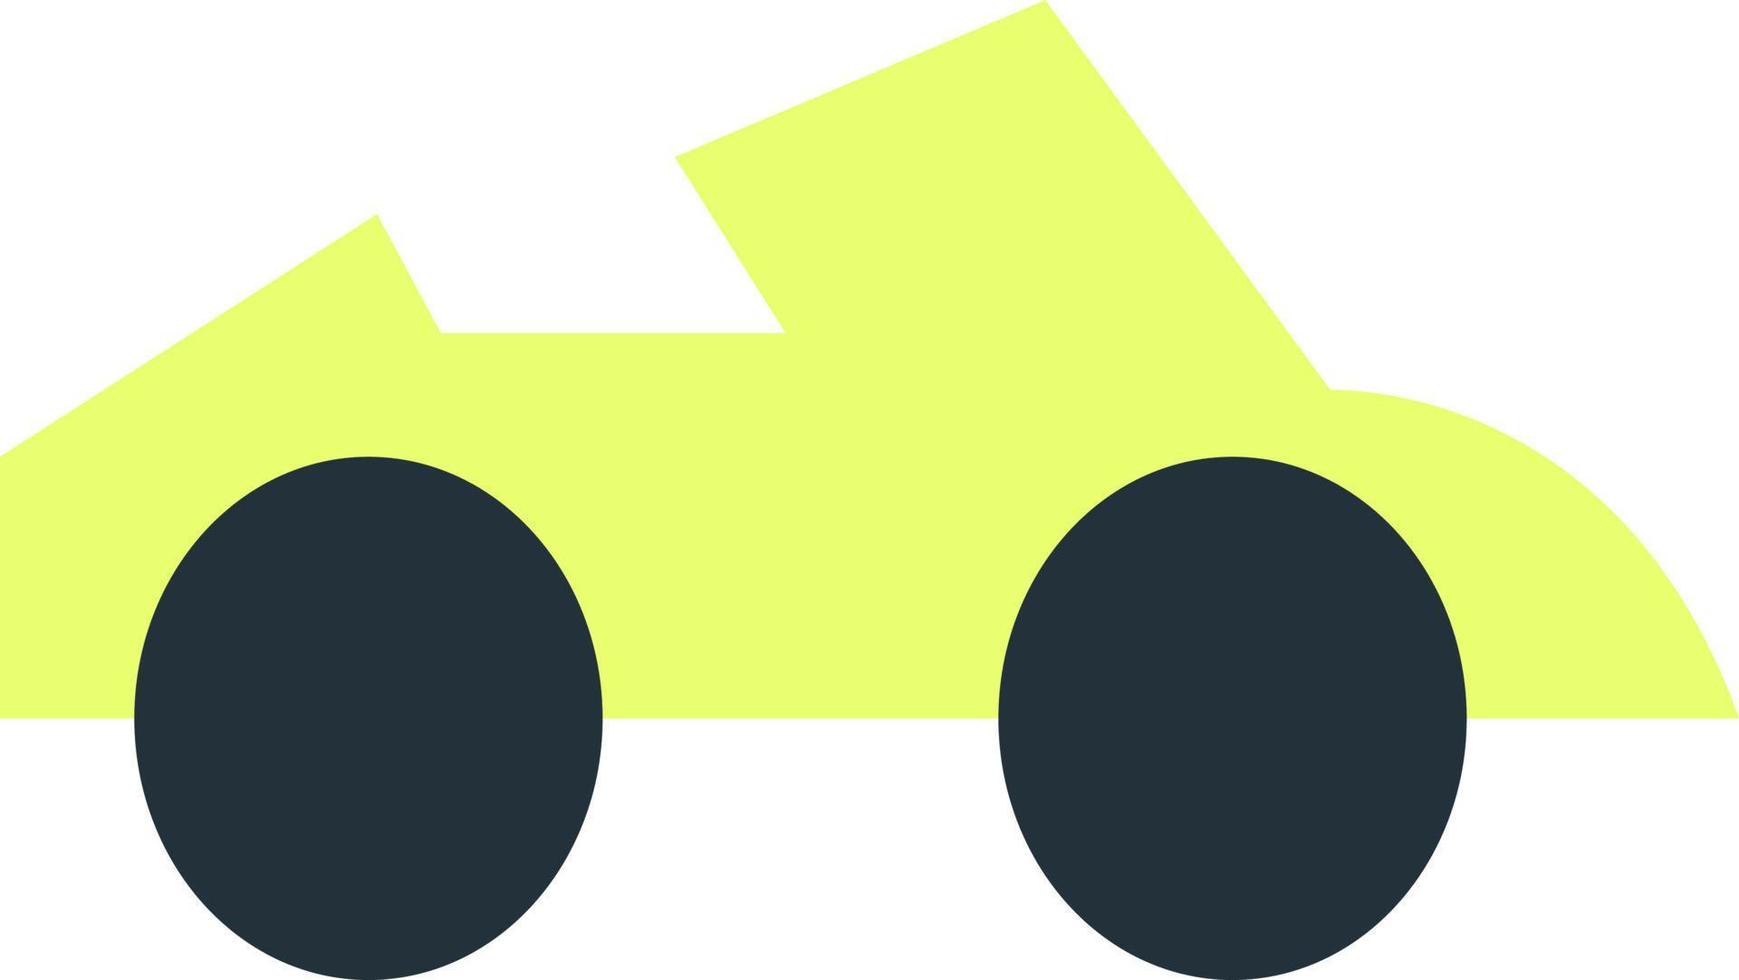 Voiture cabriolet vert citron, illustration, vecteur sur fond blanc.